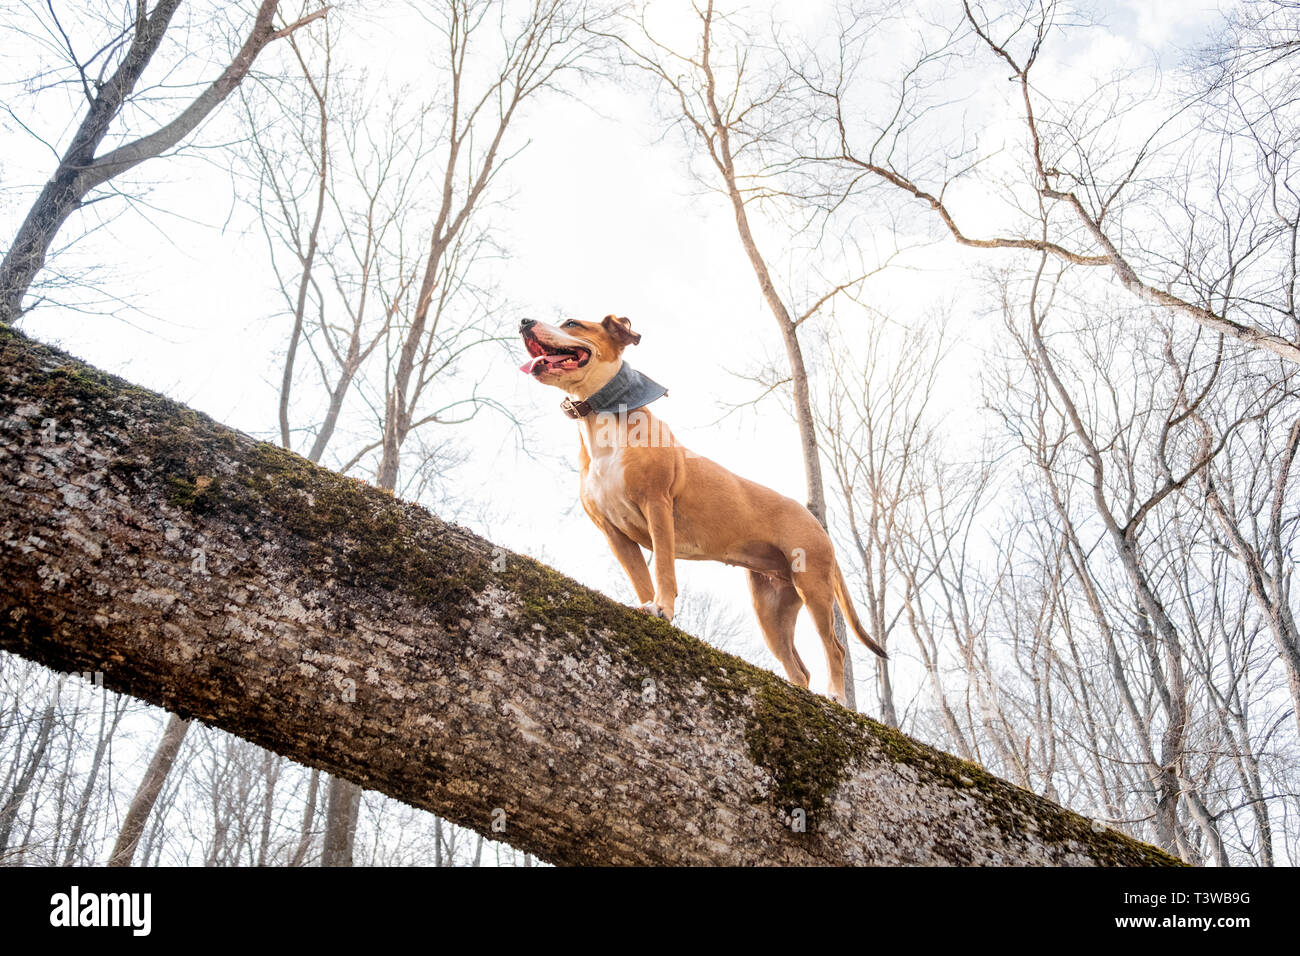 Chien d'aventure dans la forêt. Heureux Staffordshire terrier grimpe un log dans les bois et jouit d'une vie active saine, héros shot view Banque D'Images